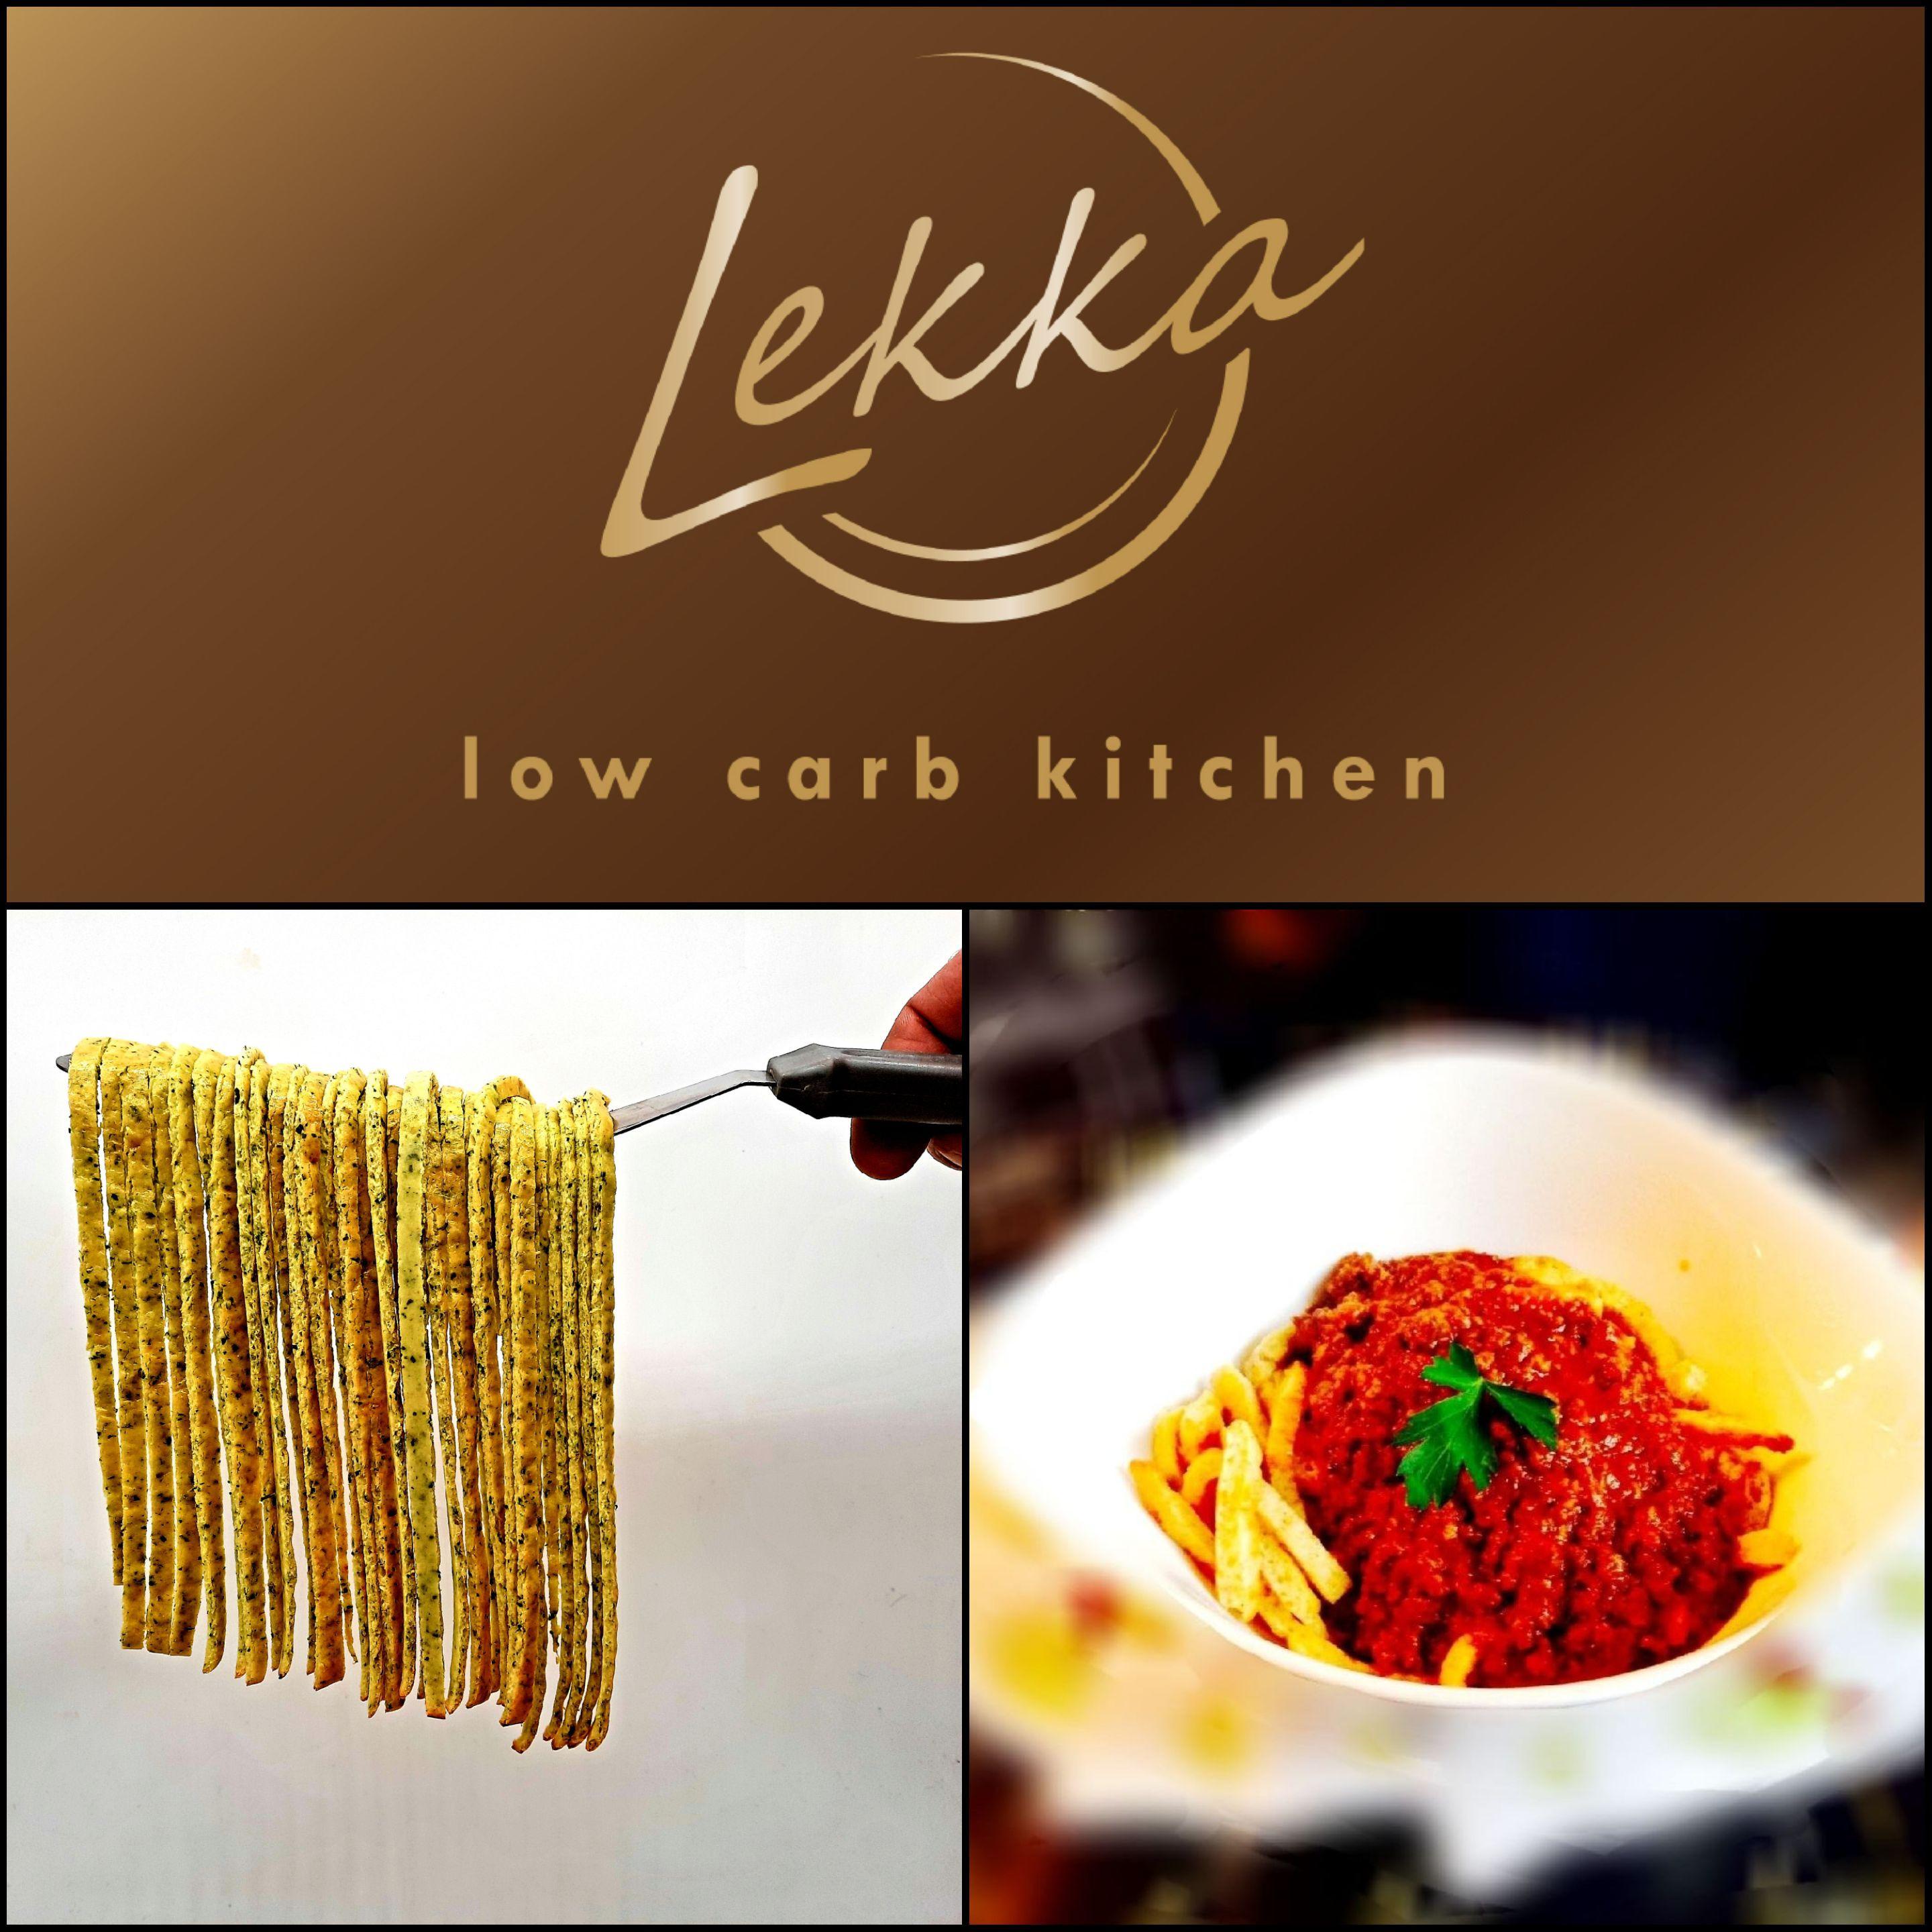 Lekka Low Carb Kitchen, Duisburger Strasse 20 in Essen